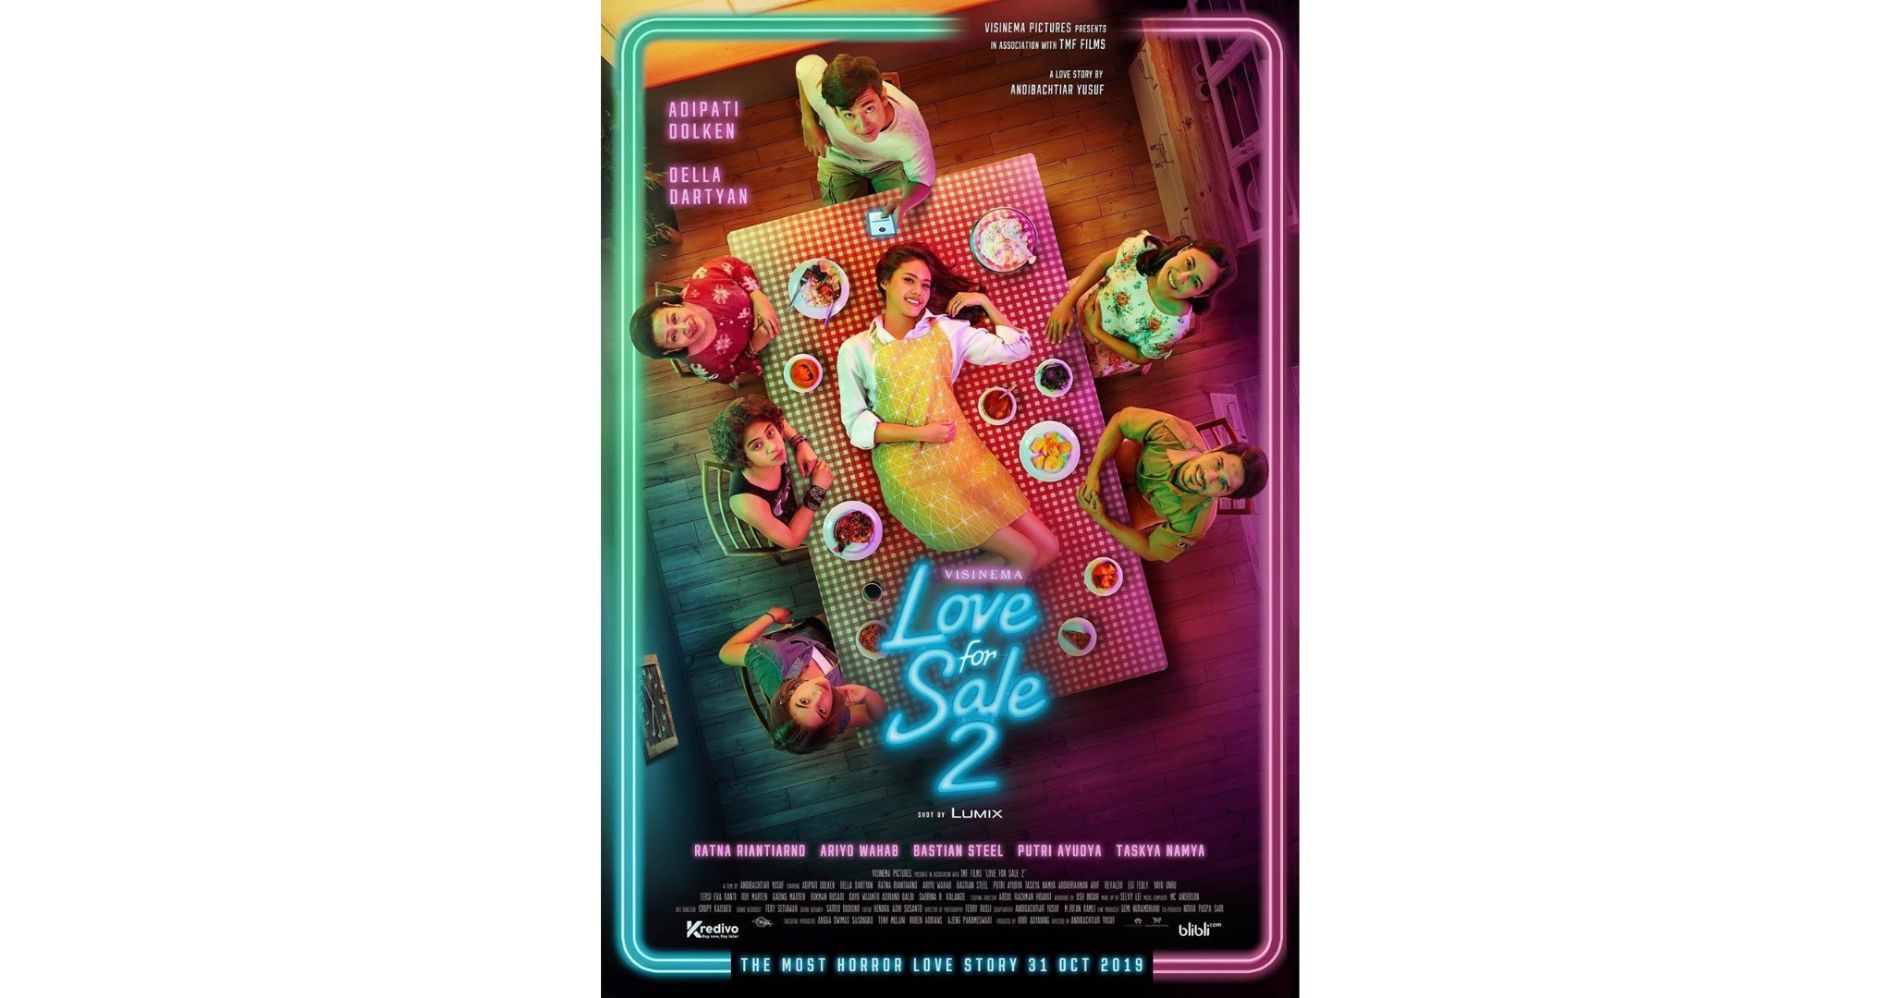 Love for Sale 2 yang Dibalut Budaya Minang - Image: IMBd